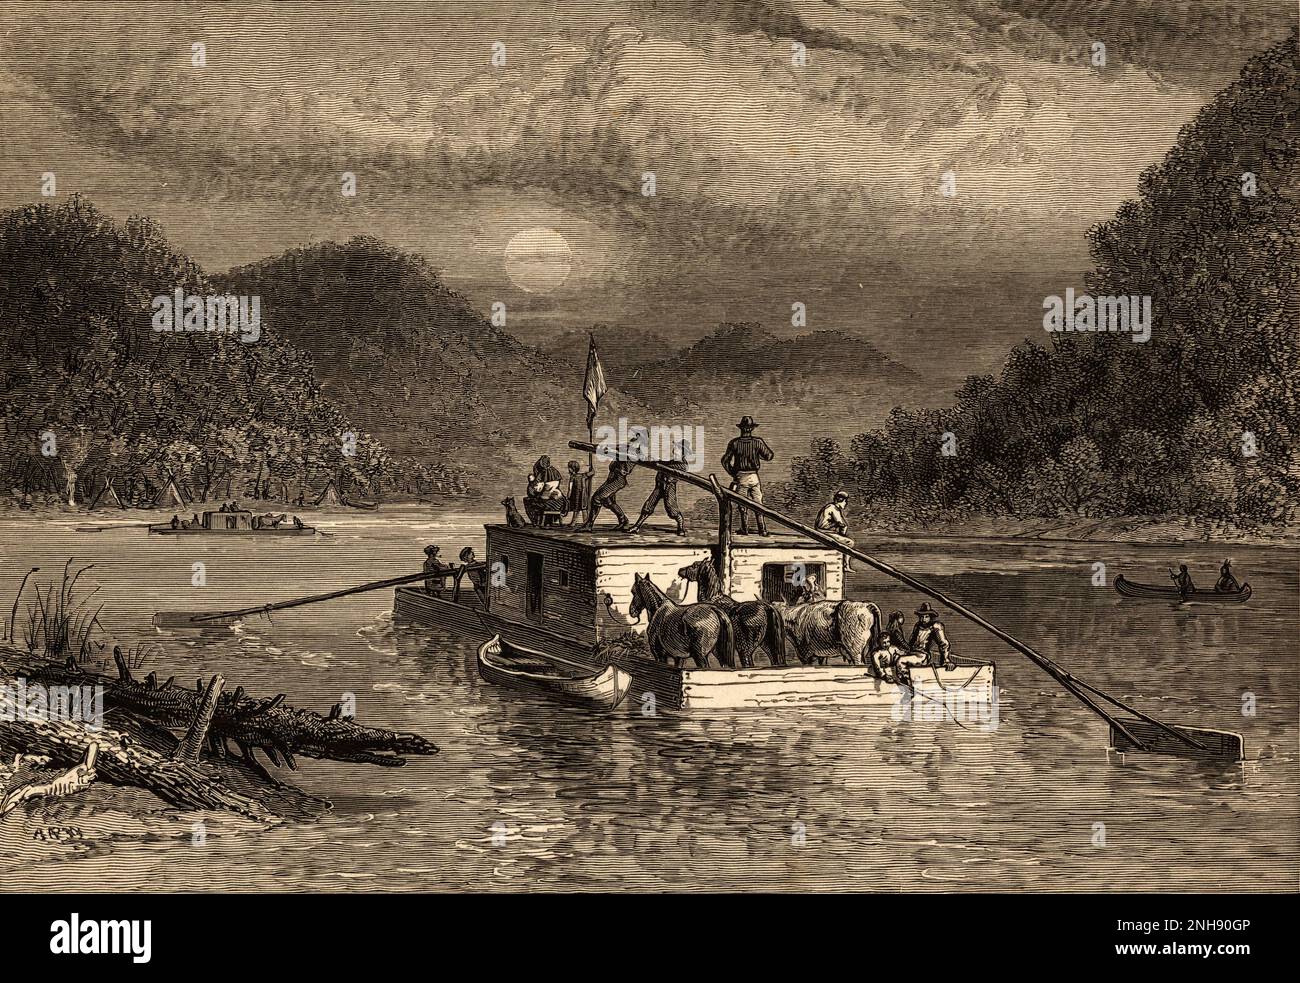 Eine Gruppe von Einwanderern und Pferden an Bord eines Flachboots, während sie den Tennessee River im Mondschein durchqueren. NHolzgravierung von Alfred Waud, hergestellt zwischen 1855 und 1890. Veröffentlicht im Century Magazine, 1916. Stockfoto